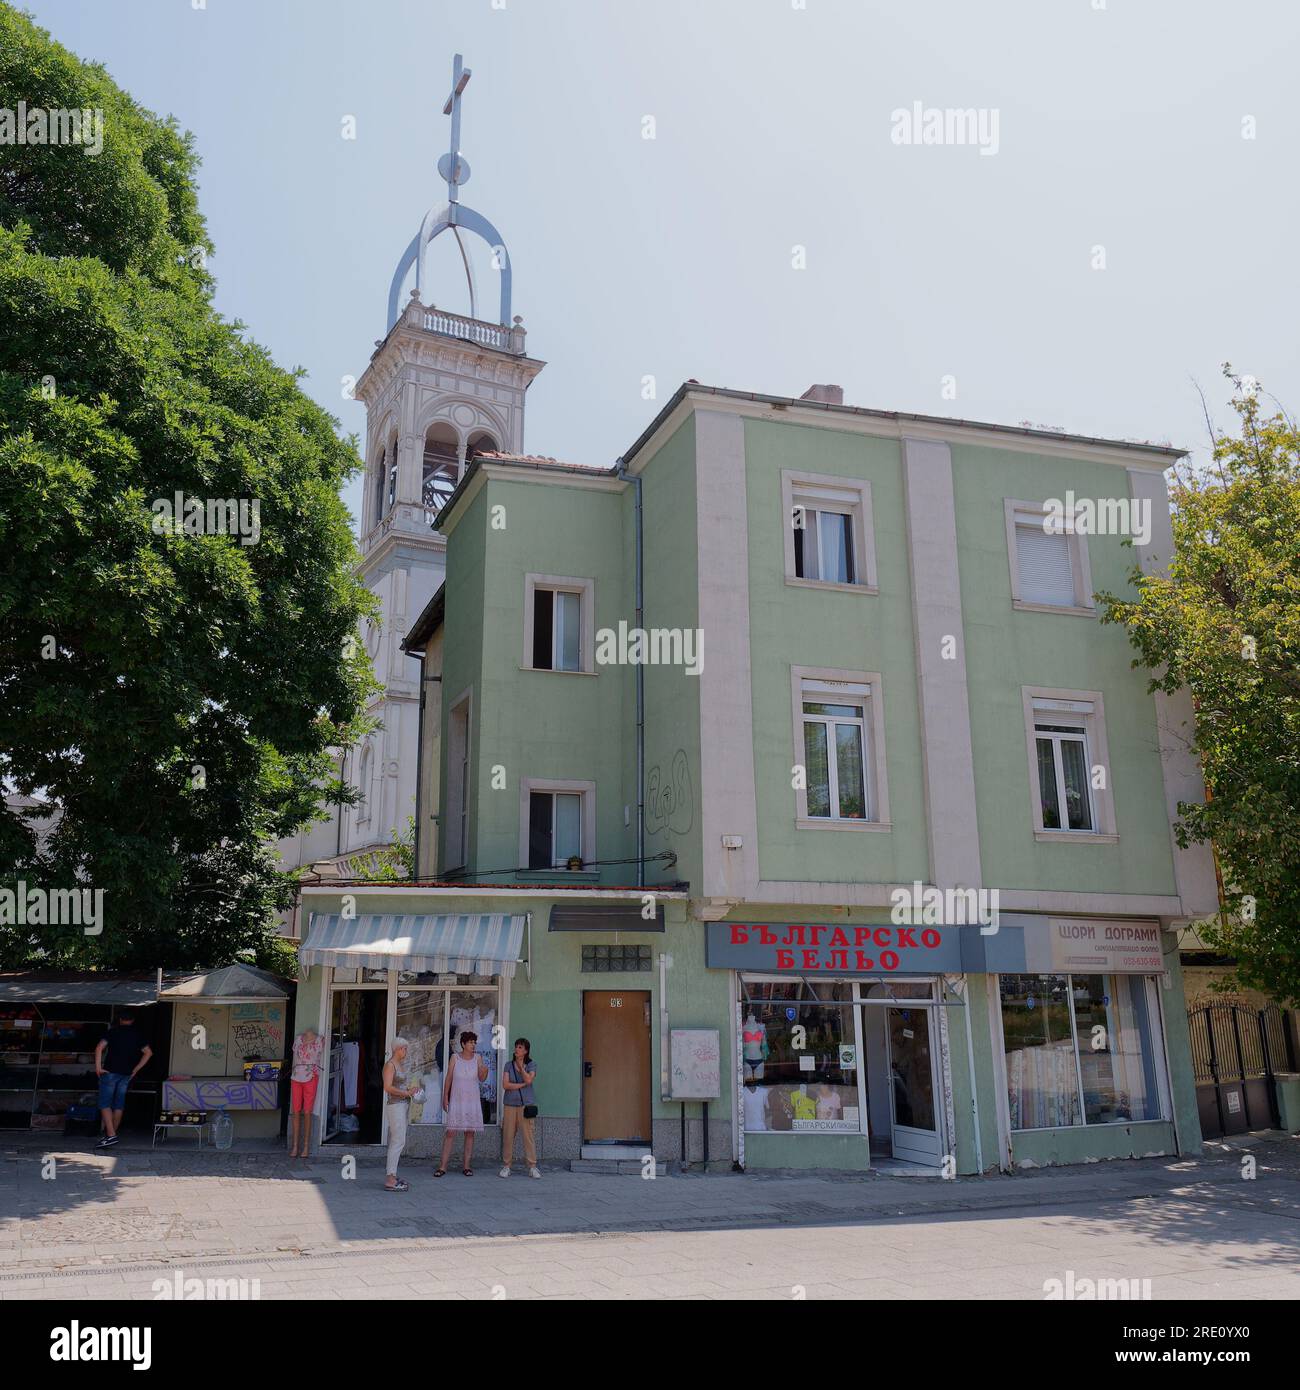 Frauen, die vor einem Damenbekleidungsgeschäft stehen, das in Grün mit einem Kirchturm dahinter in Plovdiv, Bulgarien, dargestellt ist Stockfoto